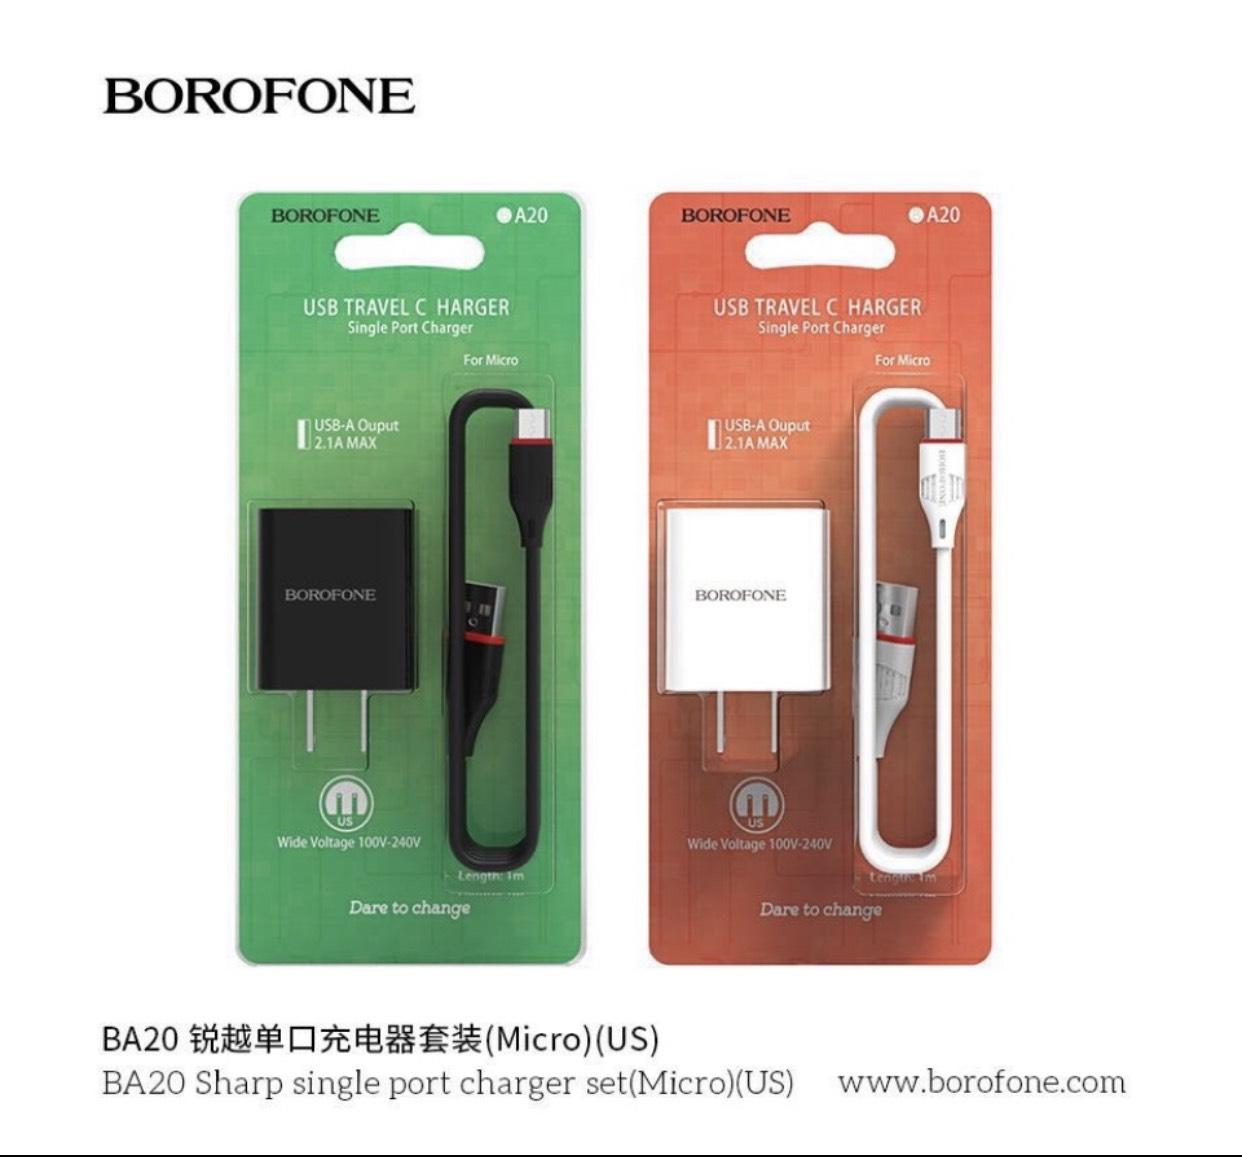 BOROFONE BA20 ชาร์ป, ผนังชาร์จพร้อมพอร์ต USB เดียว, US plug, สายเคเบิล Micro-USB หรือ USB-C, กระแสไฟออก 2.1A